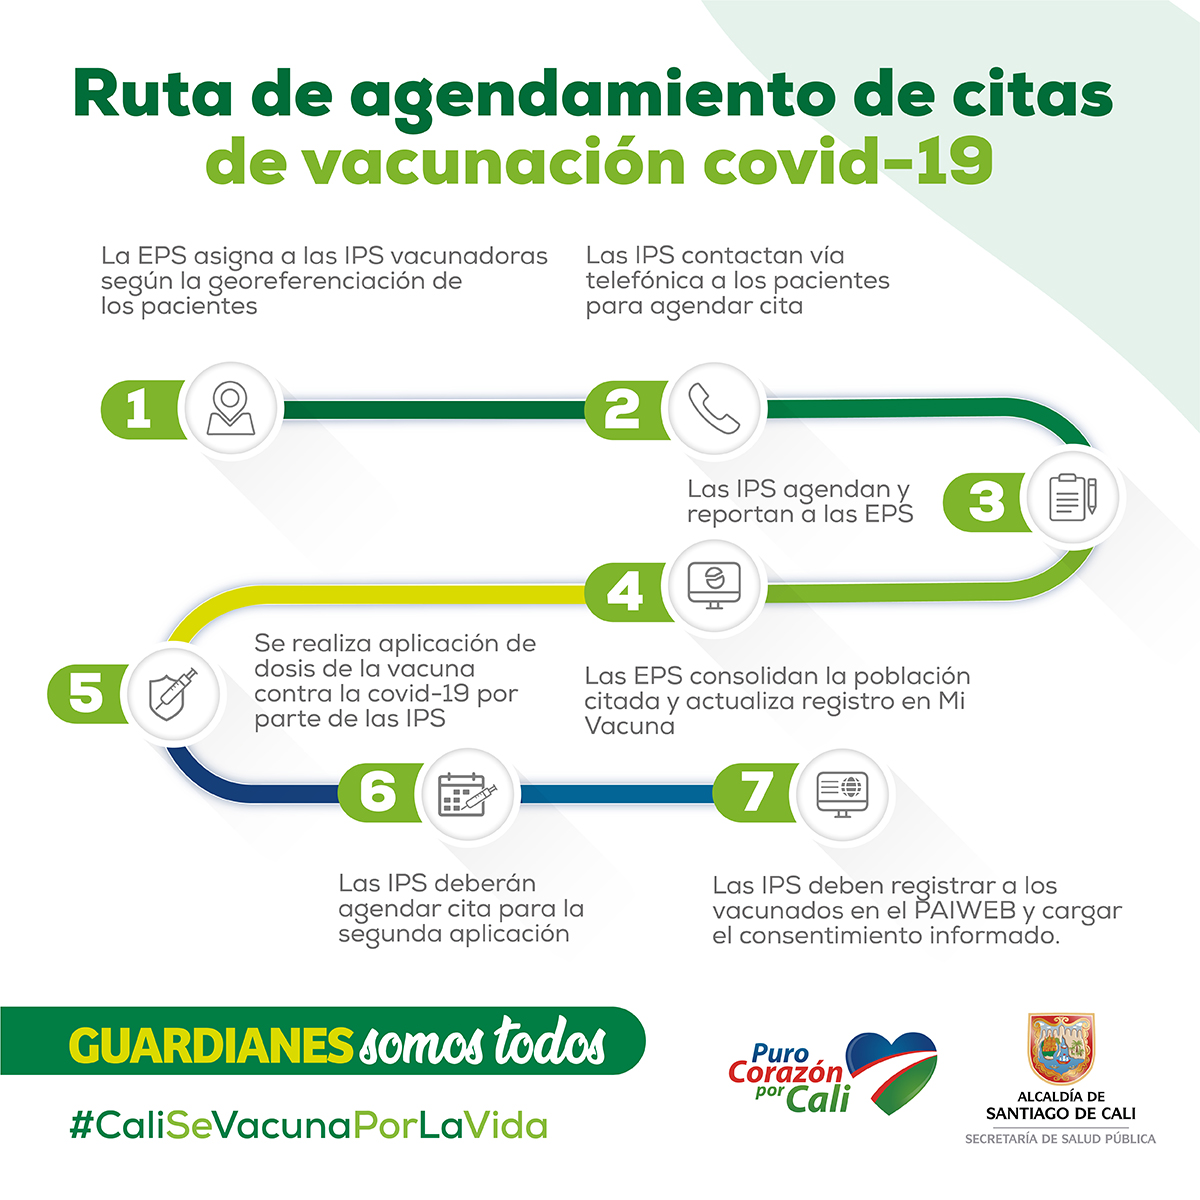 1_infografía Ruta agendamiento citas vacunación covid